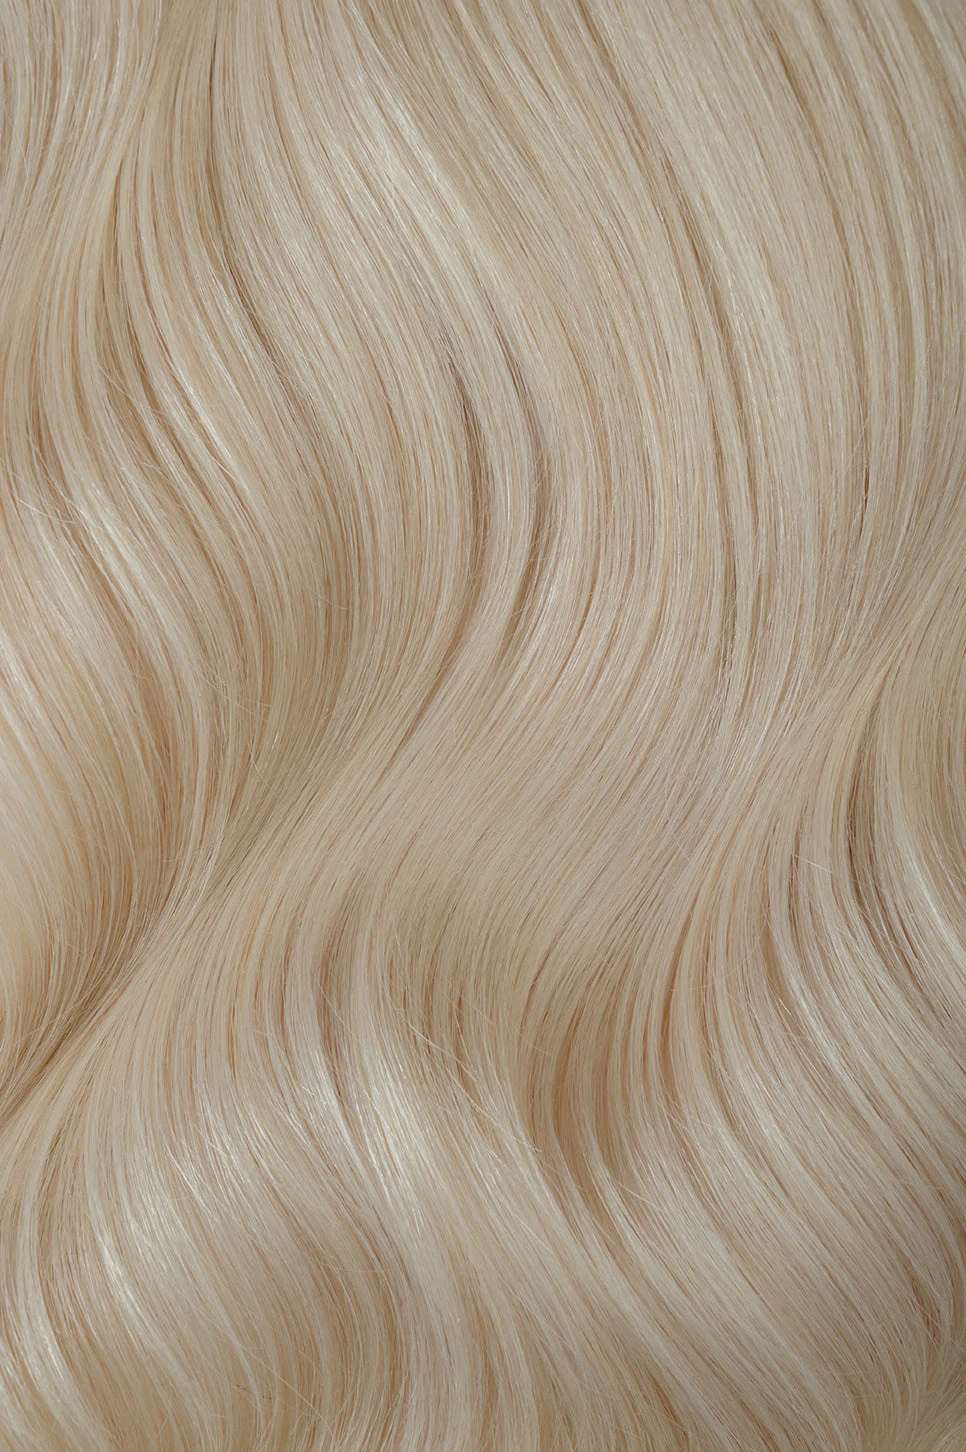 #60 Platinum Ash Blonde Invisi Tape Hair Extensions